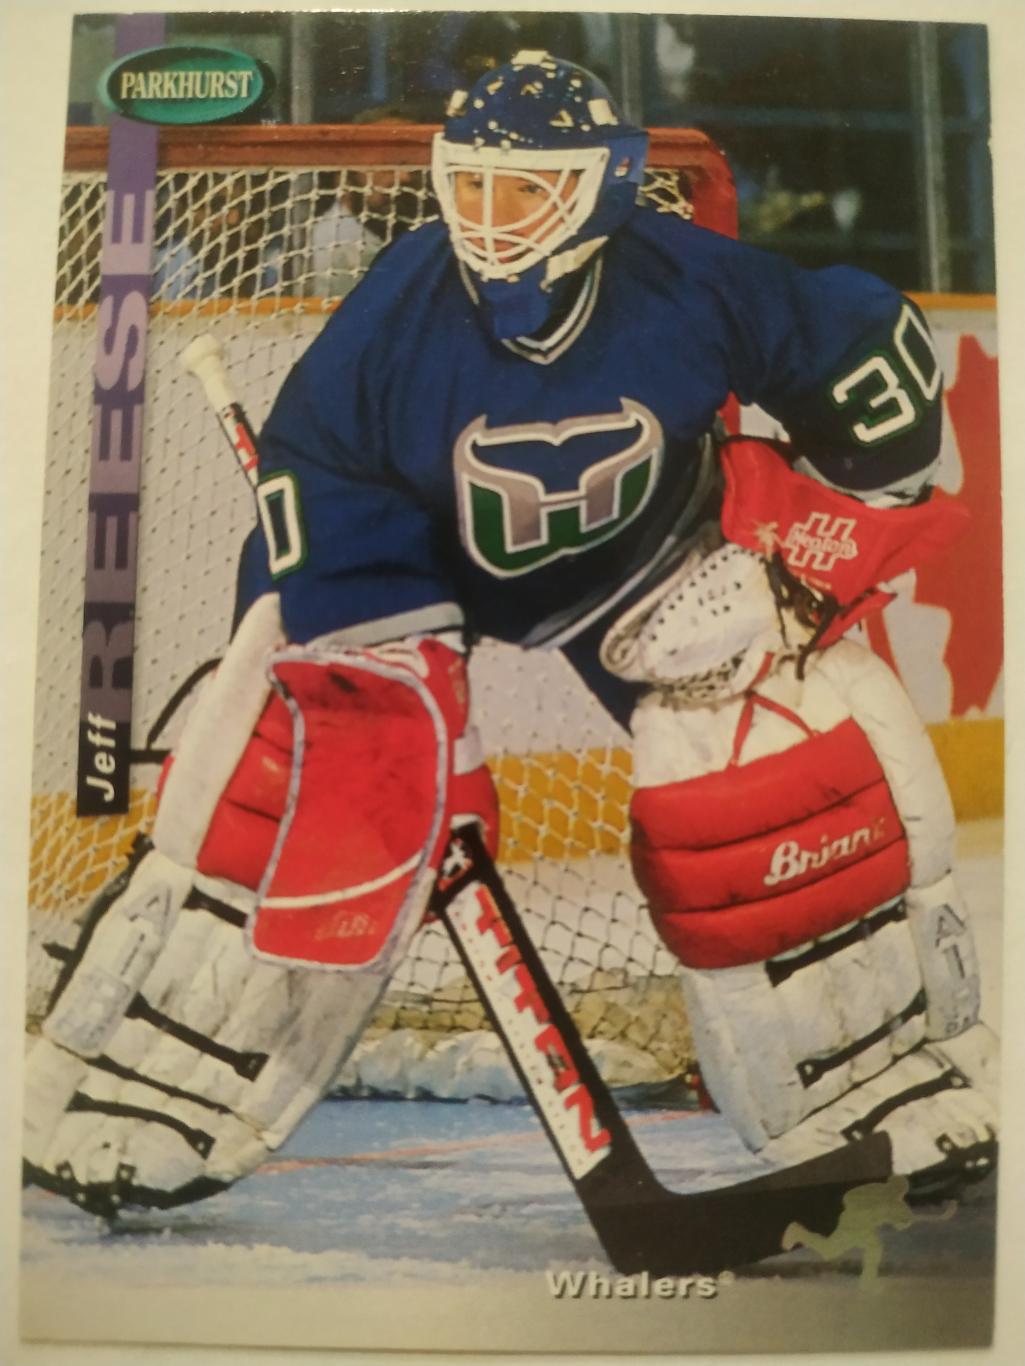 ХОККЕЙ КАРТОЧКА НХЛ PARKHURST 1994-95 NHL JEFF REESE HARTFORD WHALERS #SE74